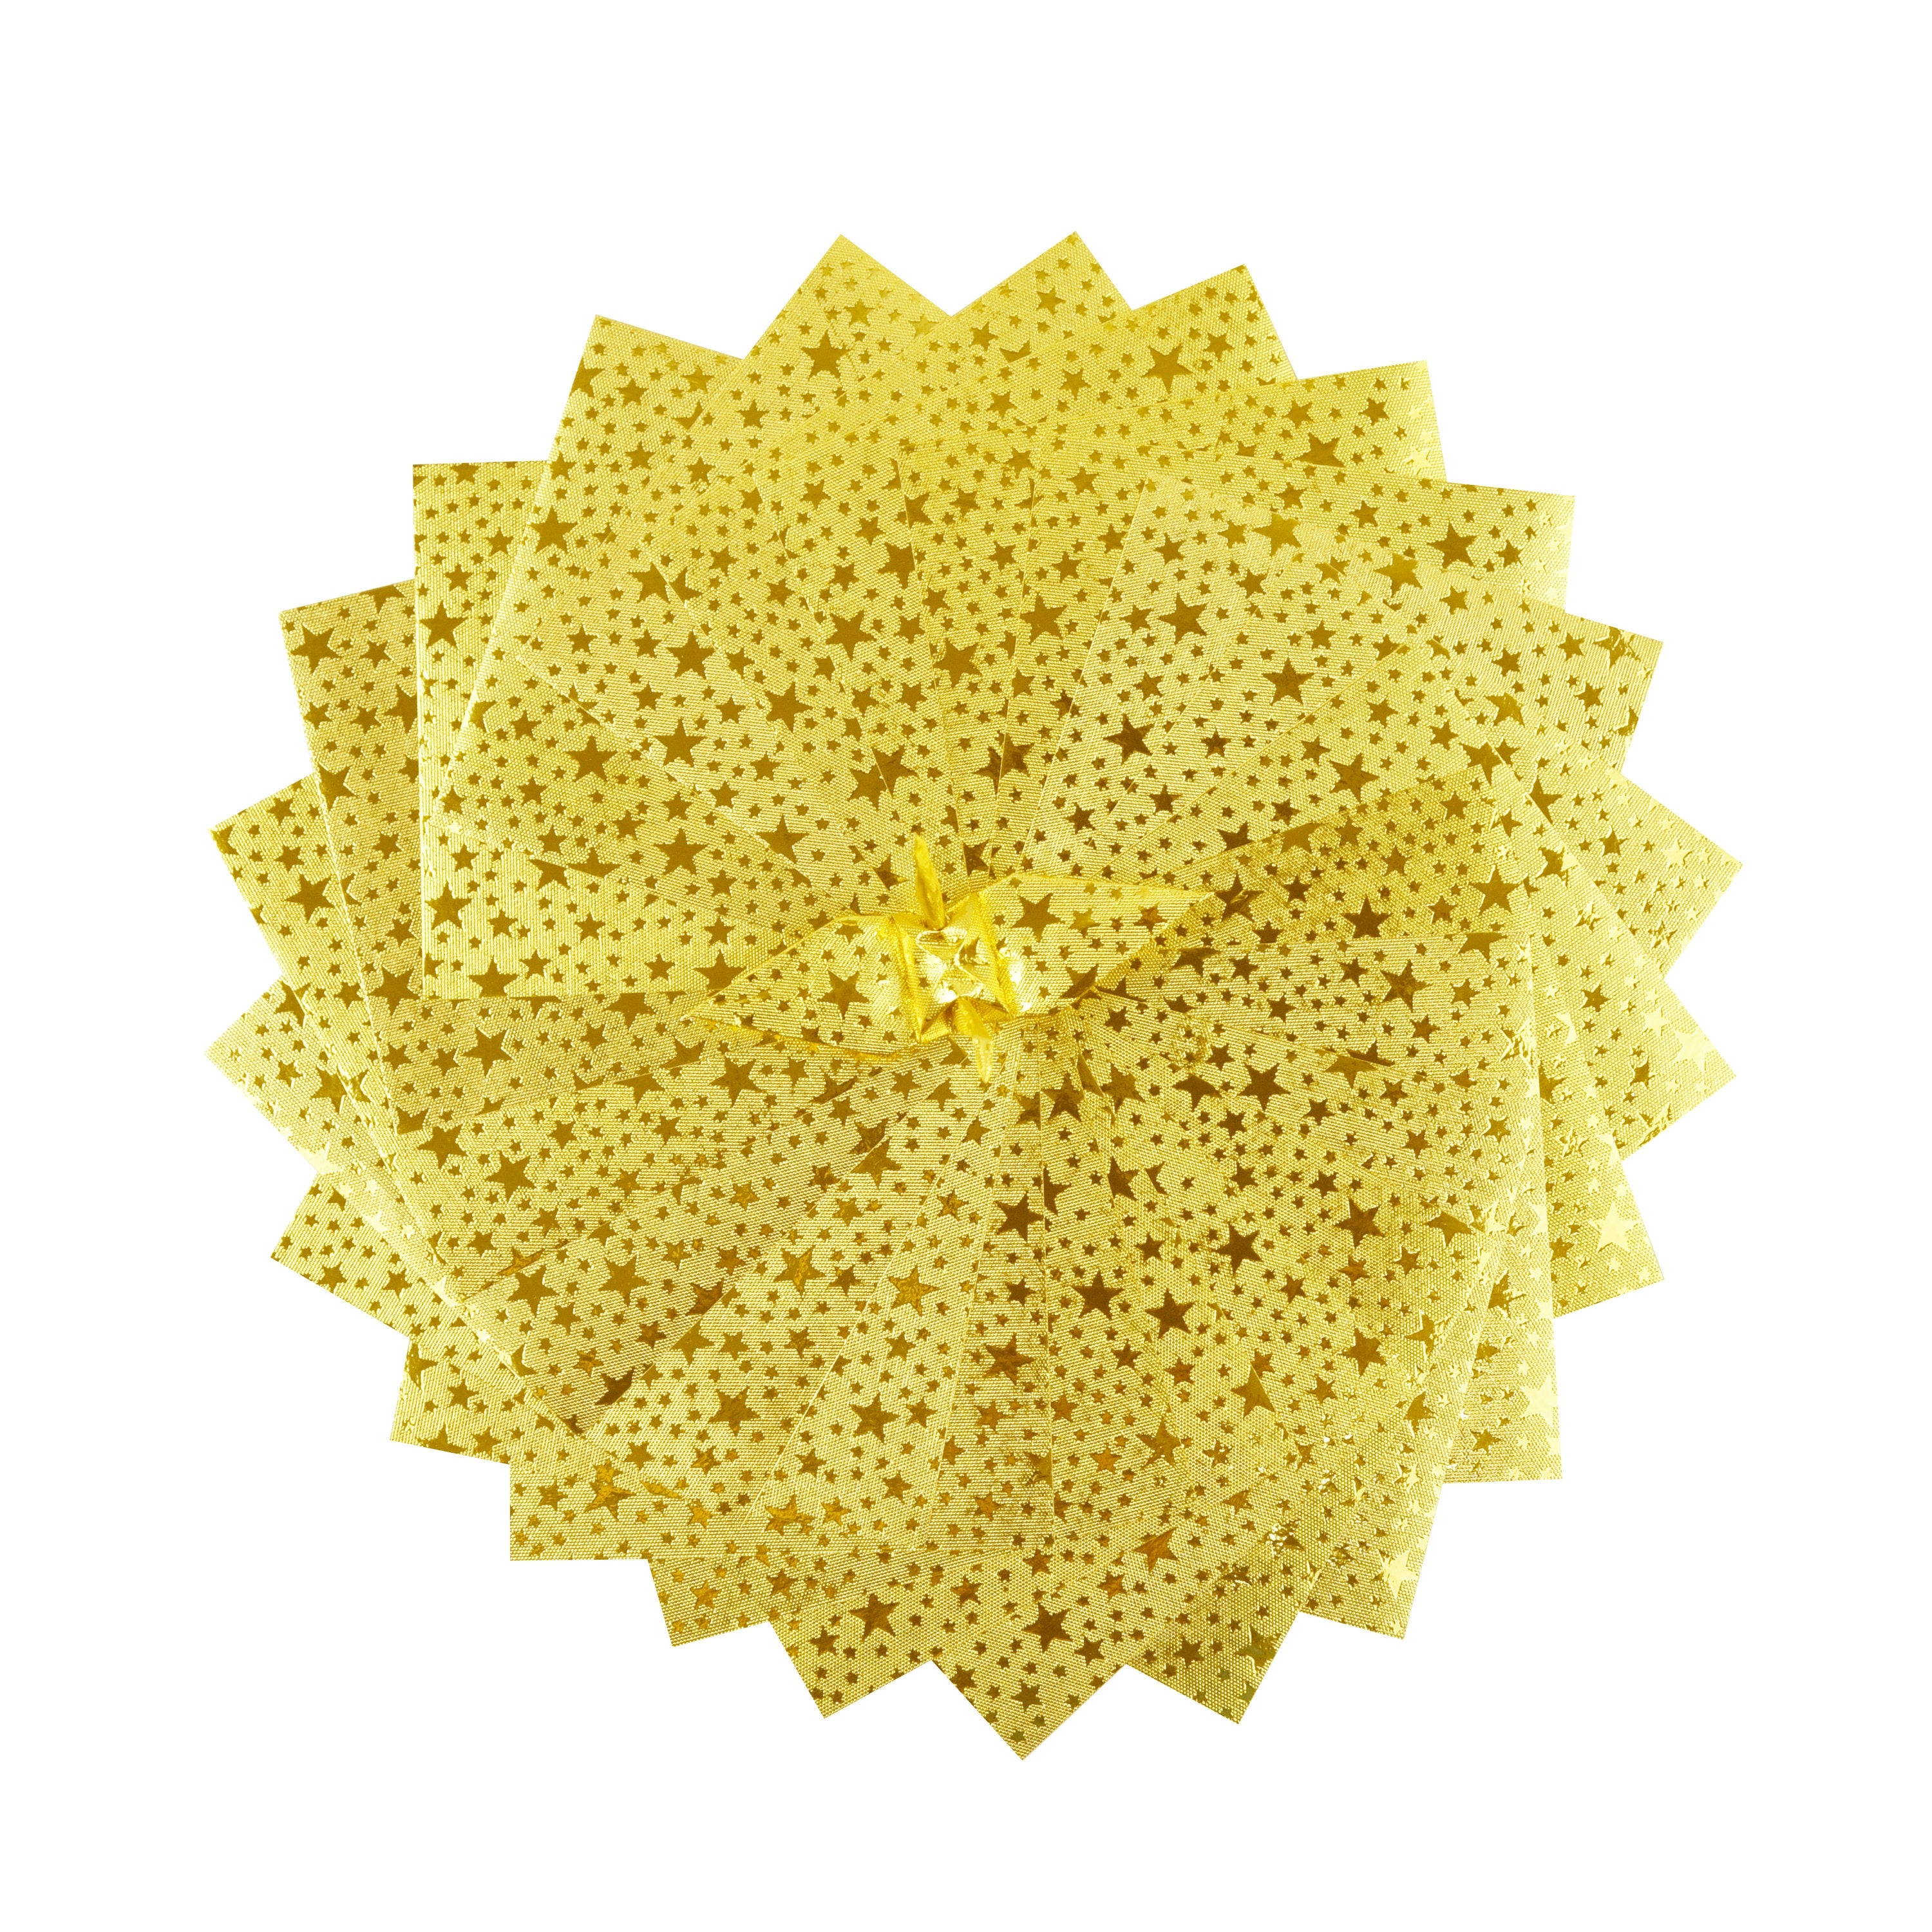 100 hojas de papel de origami Gold Star - 3x3 pulgadas - para plegar, grullas, decoración